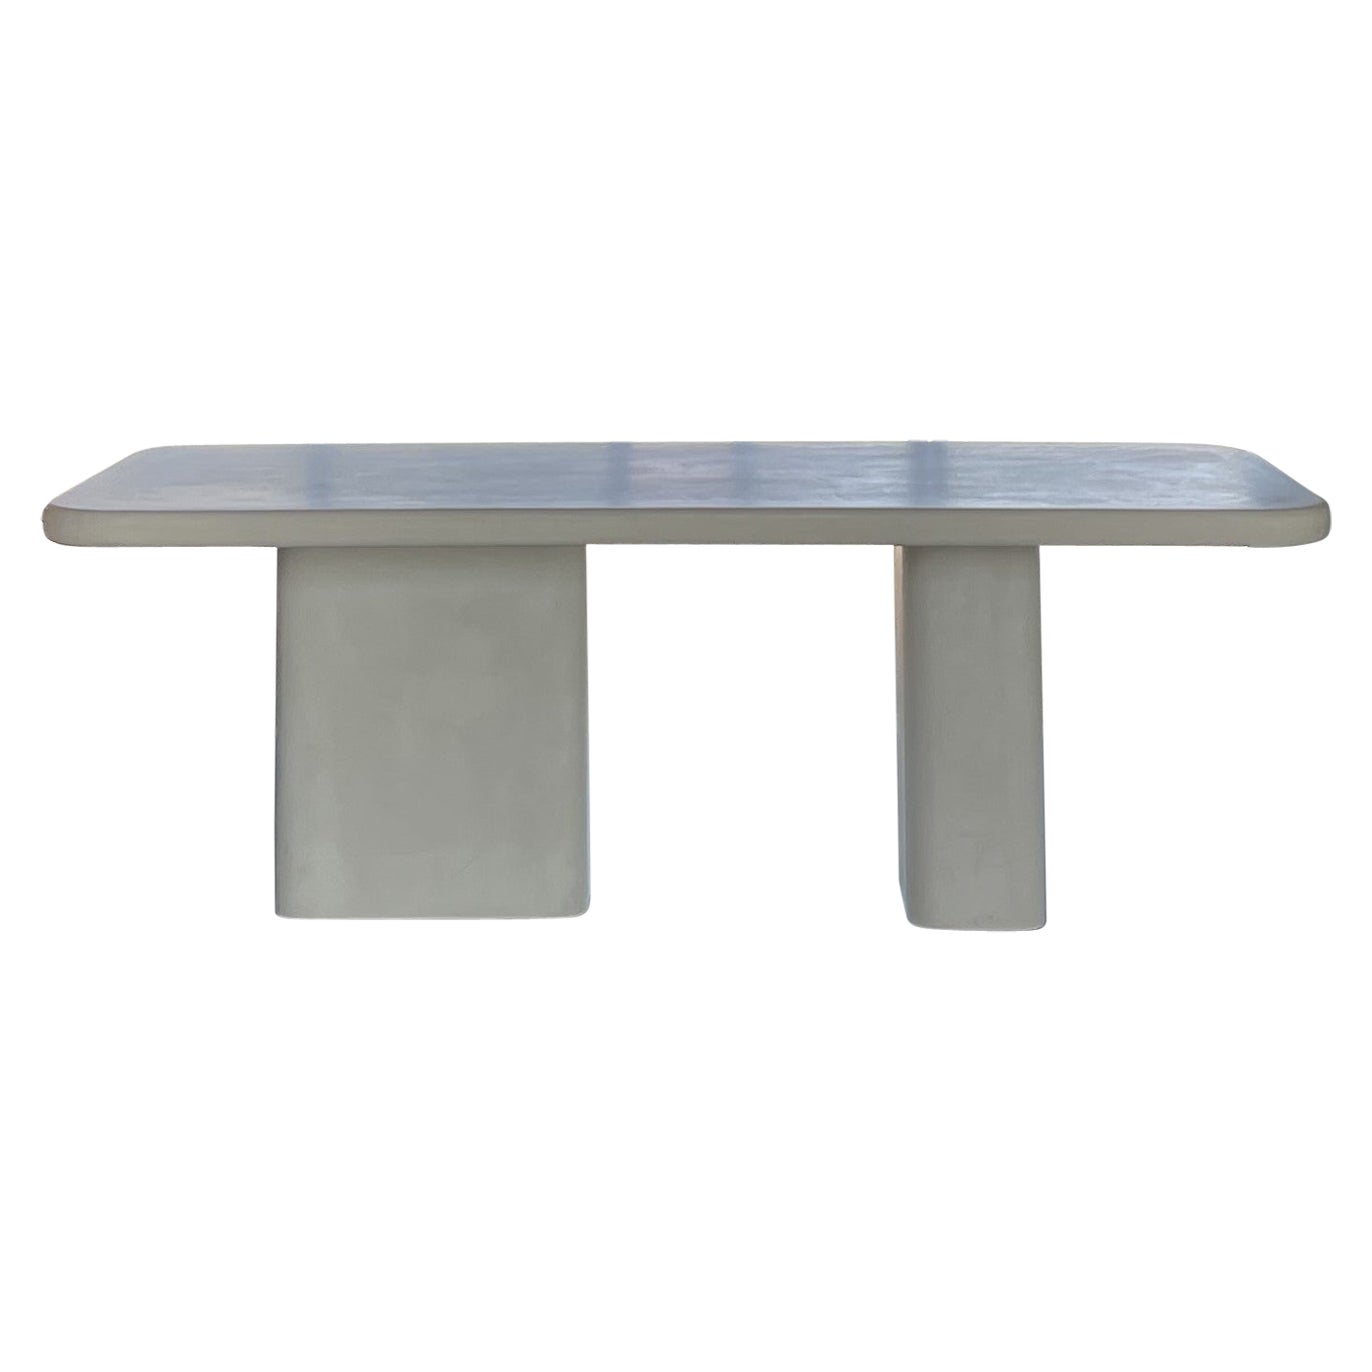 Concrete Table by Vive Ma Maison